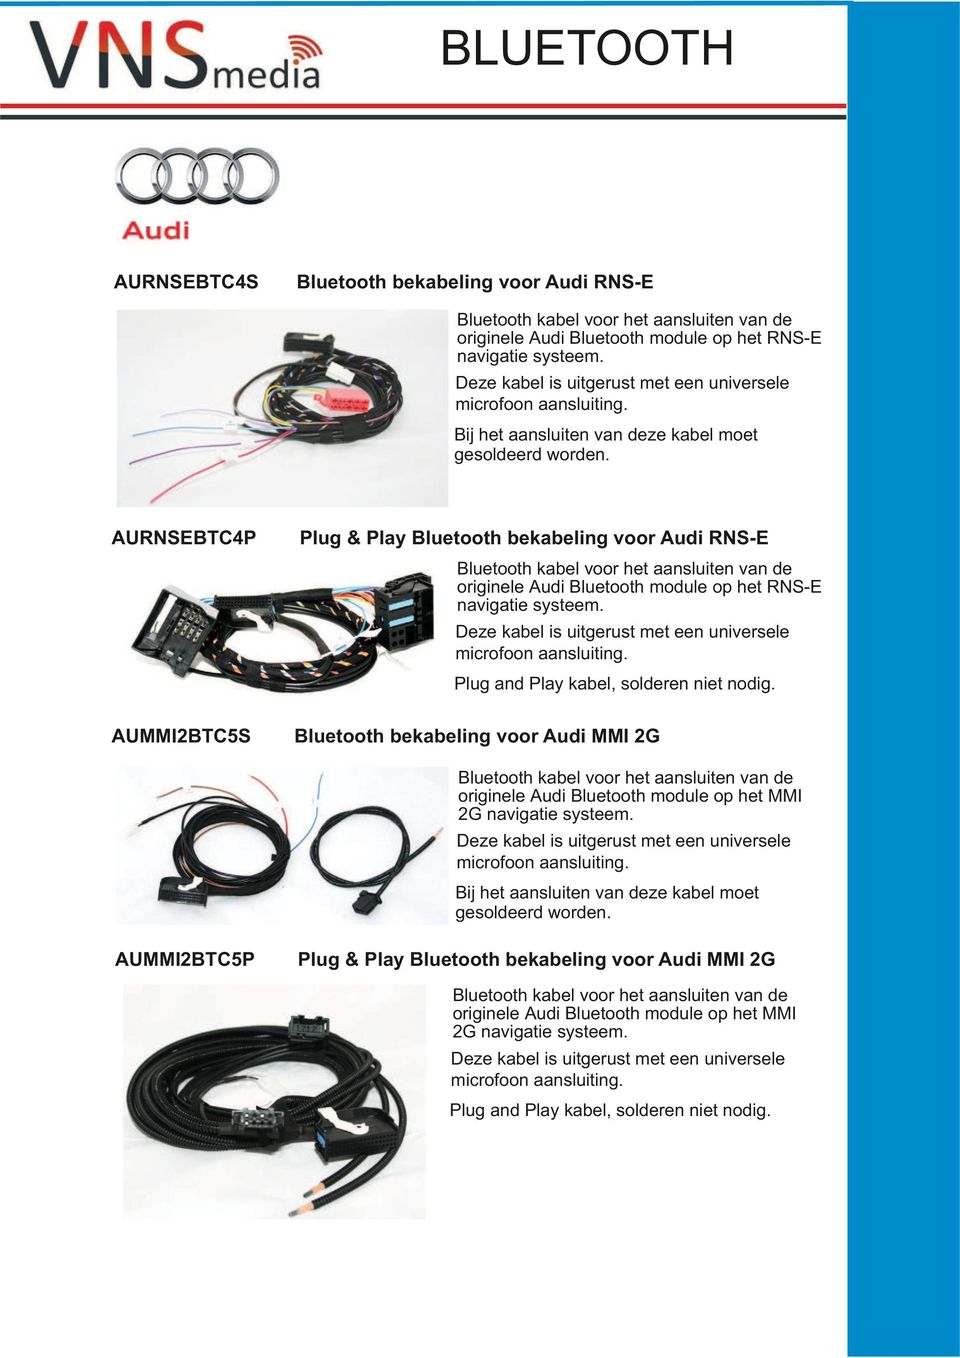 AURNSEBTC4P bekabeling voor Bluetooth kabel voor het aansluiten van de originele Audi Bluetooth module op het RNS-E navigatie systeem. Deze kabel is uitgerust met een universele microfoon aansluiting.